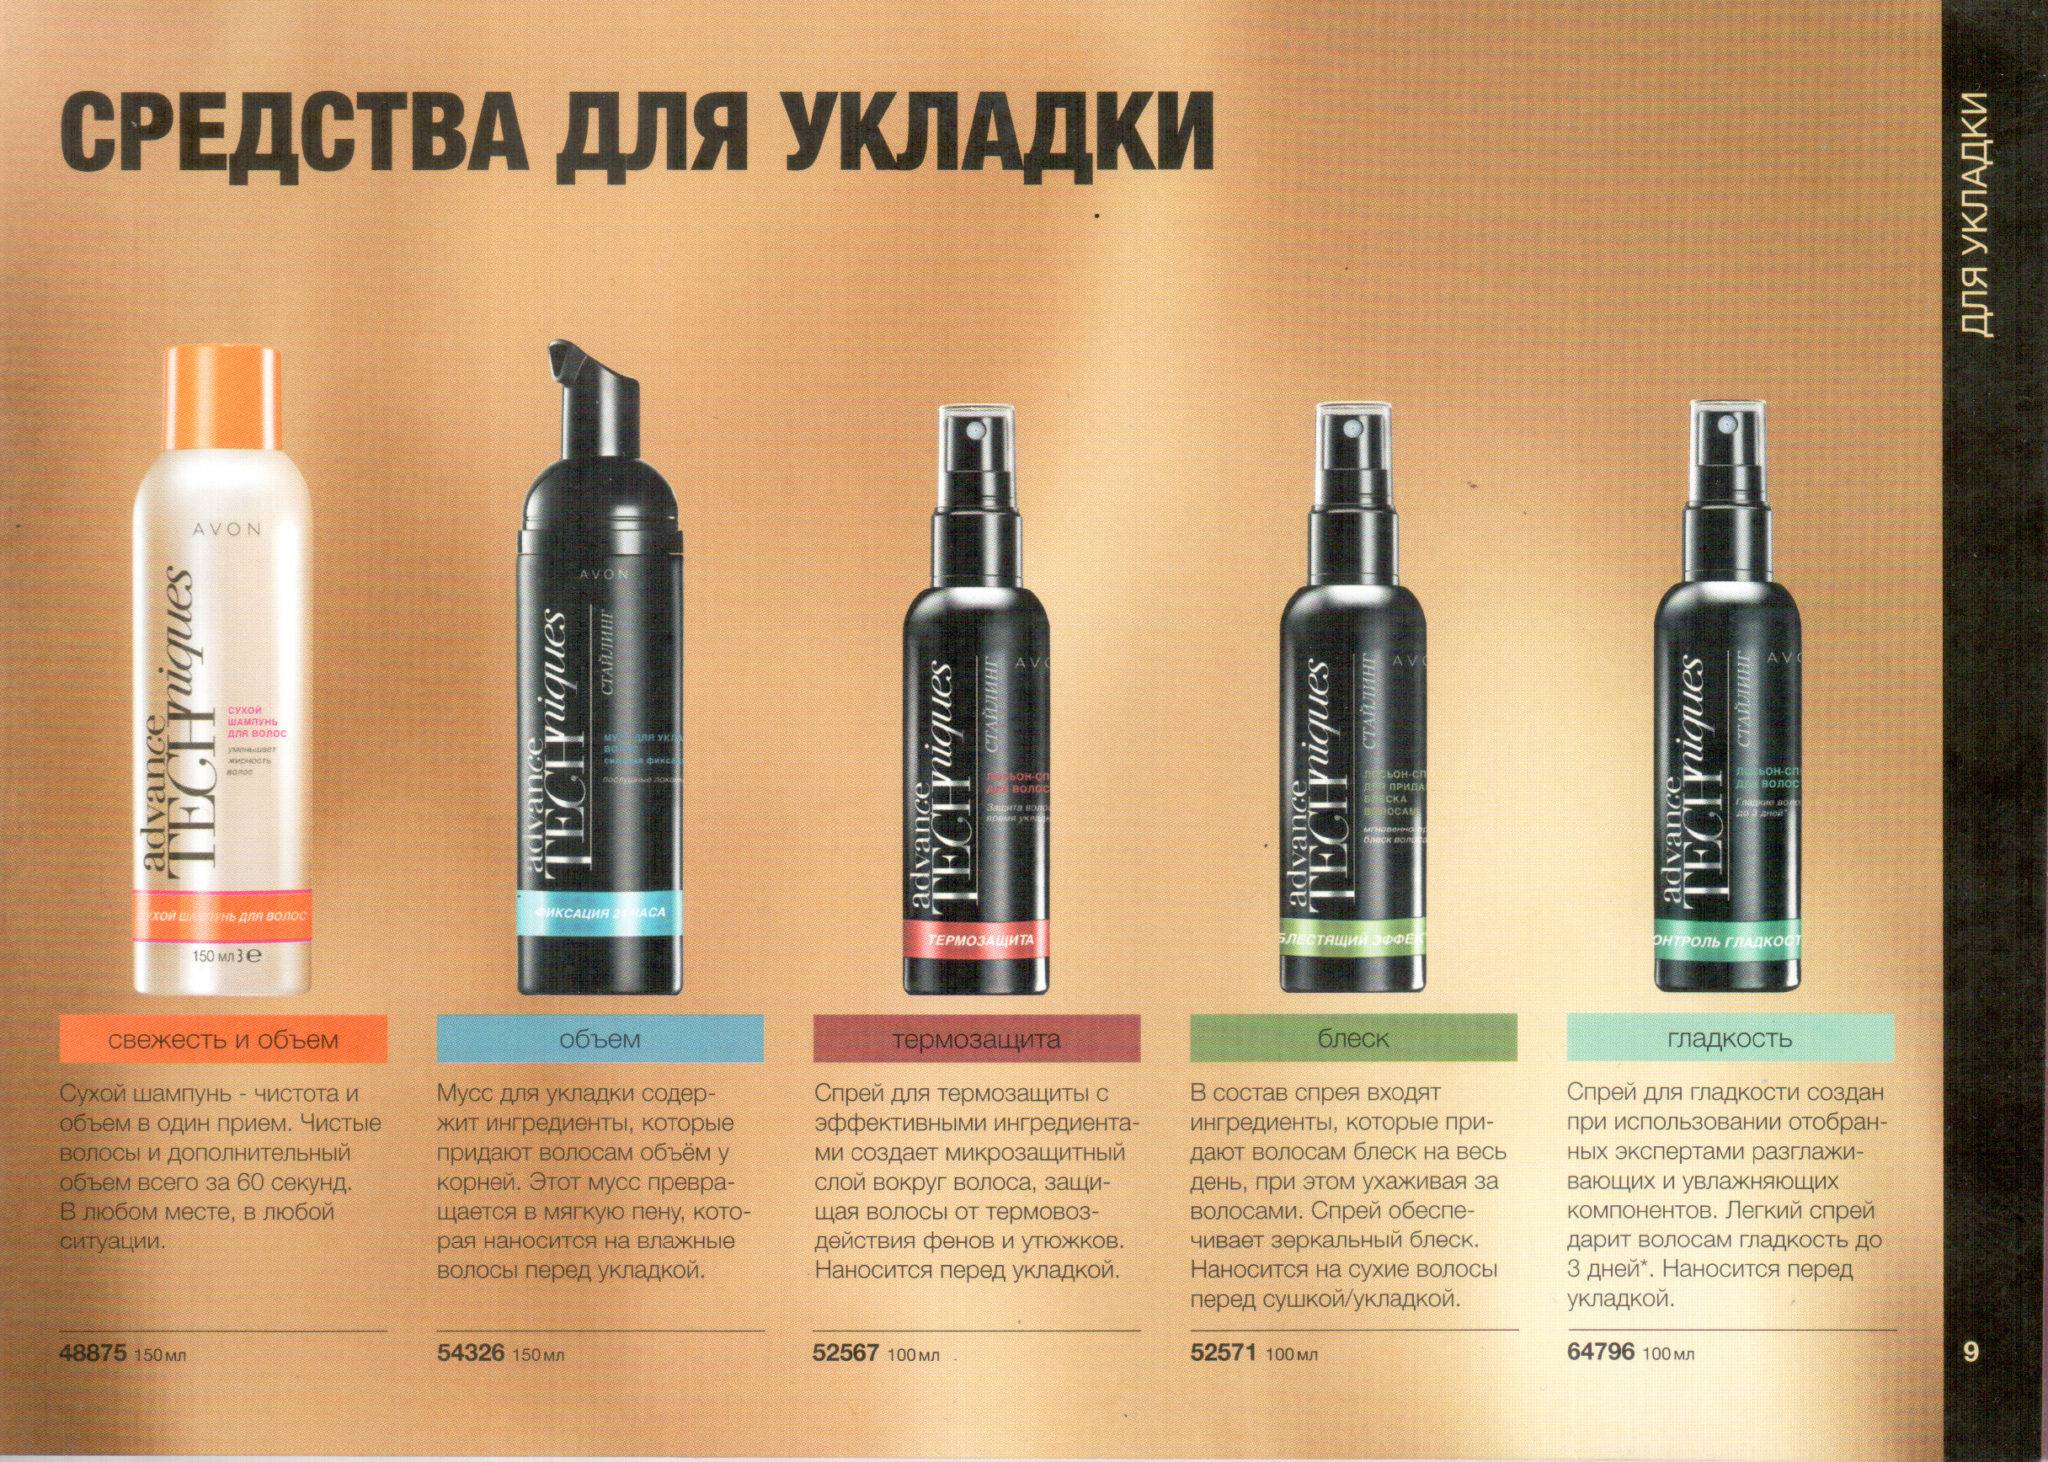 Ultra hair system ⭐: спрей для роста волос отзывы покупателей (официальный сайт, где купить)